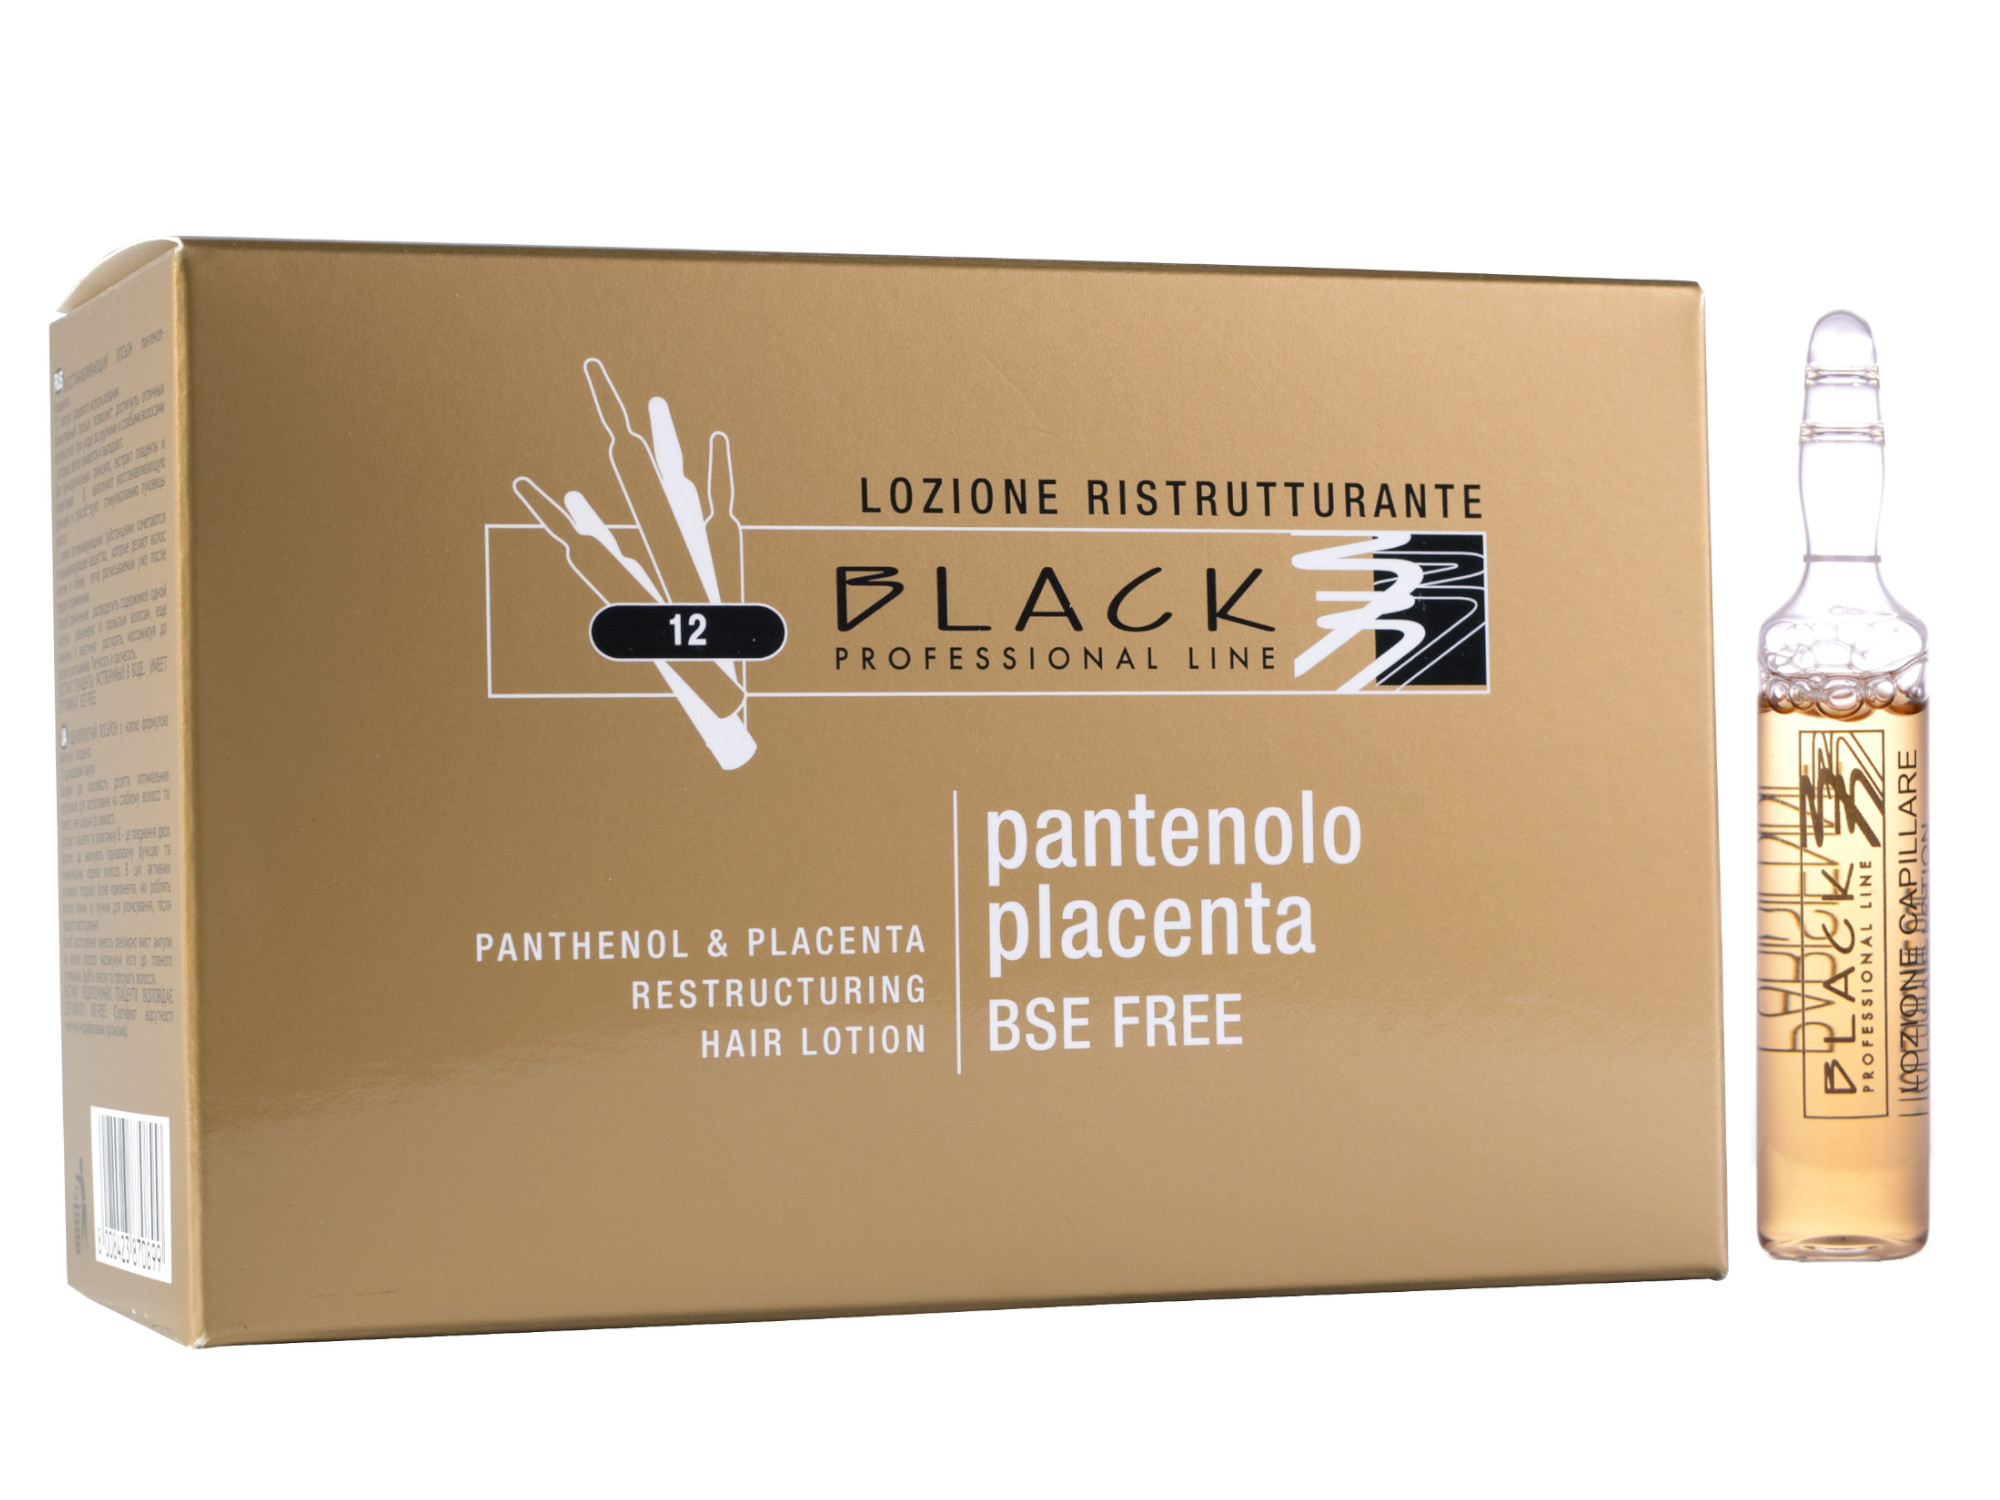 Ampulky k revitalizaci vlasů Black Panthenol a Placenta Hair Lotion (01078) + DÁREK ZDARMA